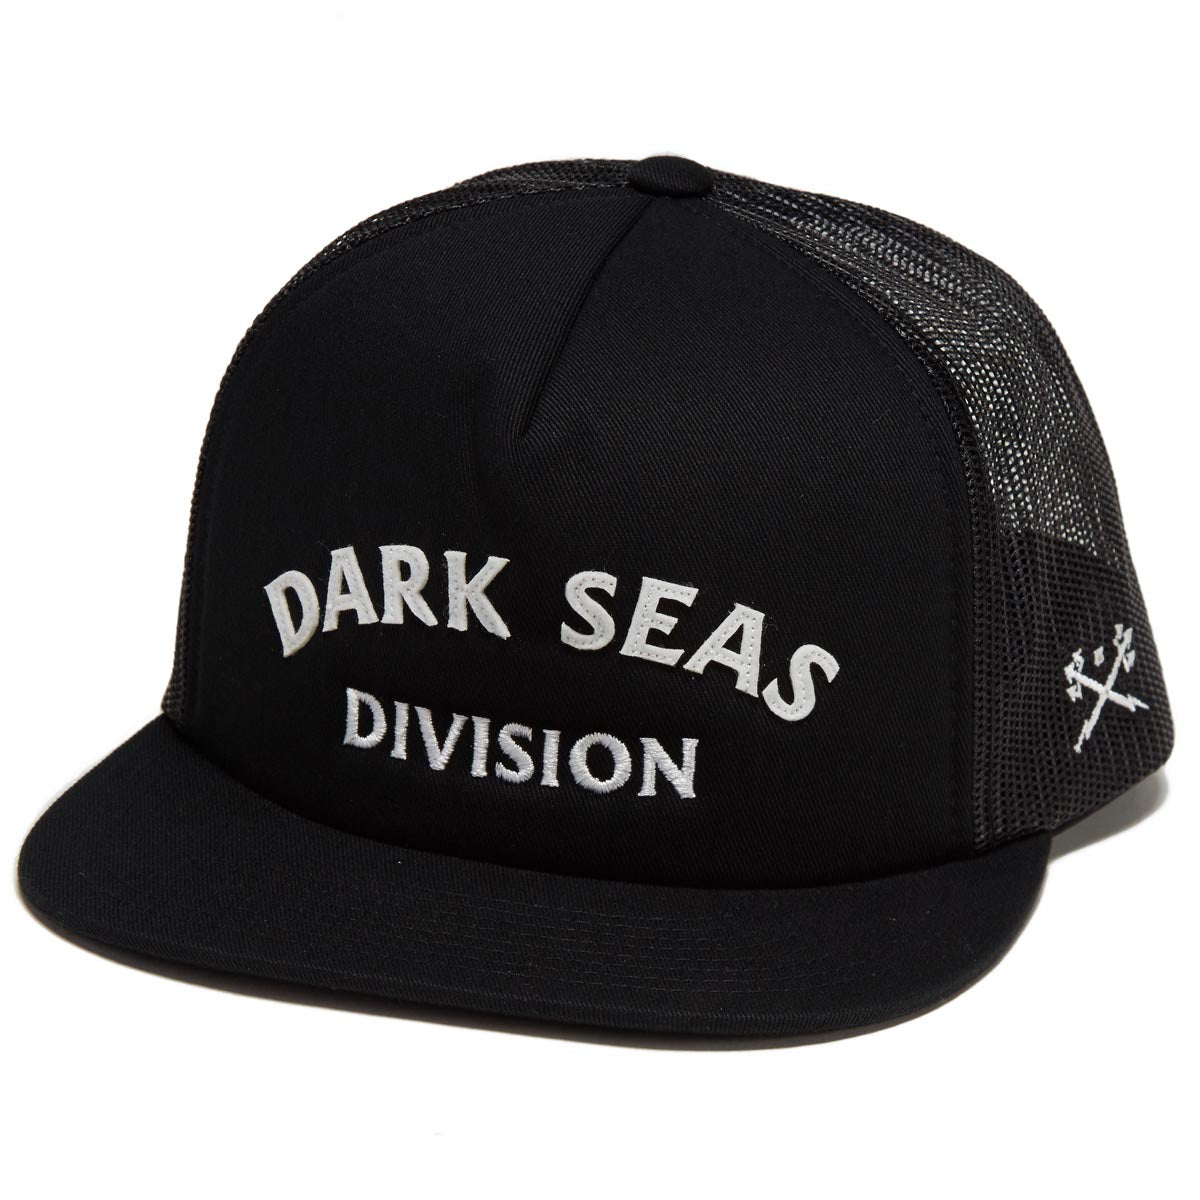 Dark Seas Barbados Hat - Black image 1